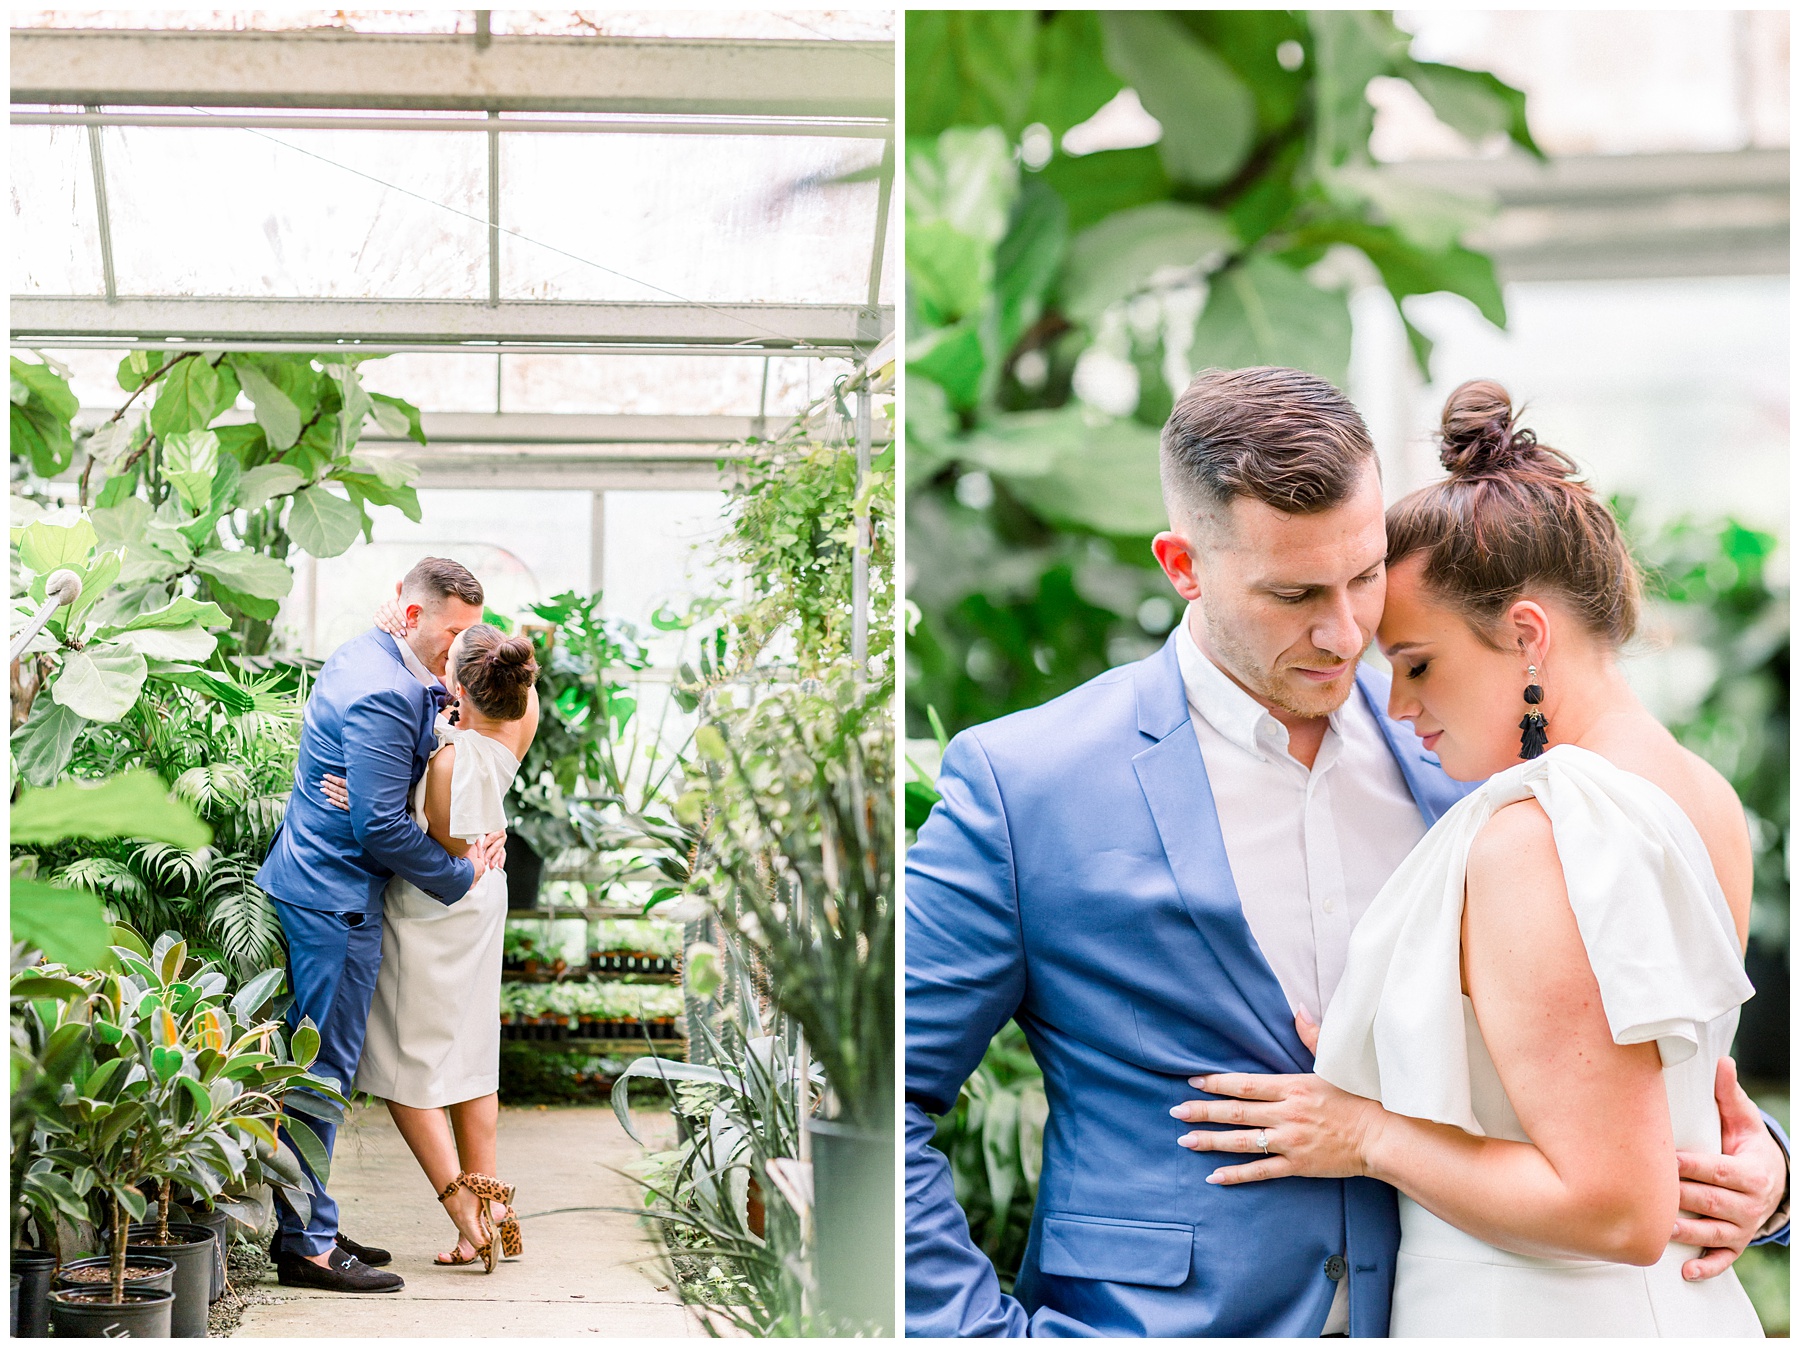 Big Greenhouse Newlywed Session. Columbus Ohio Wedding Photographer